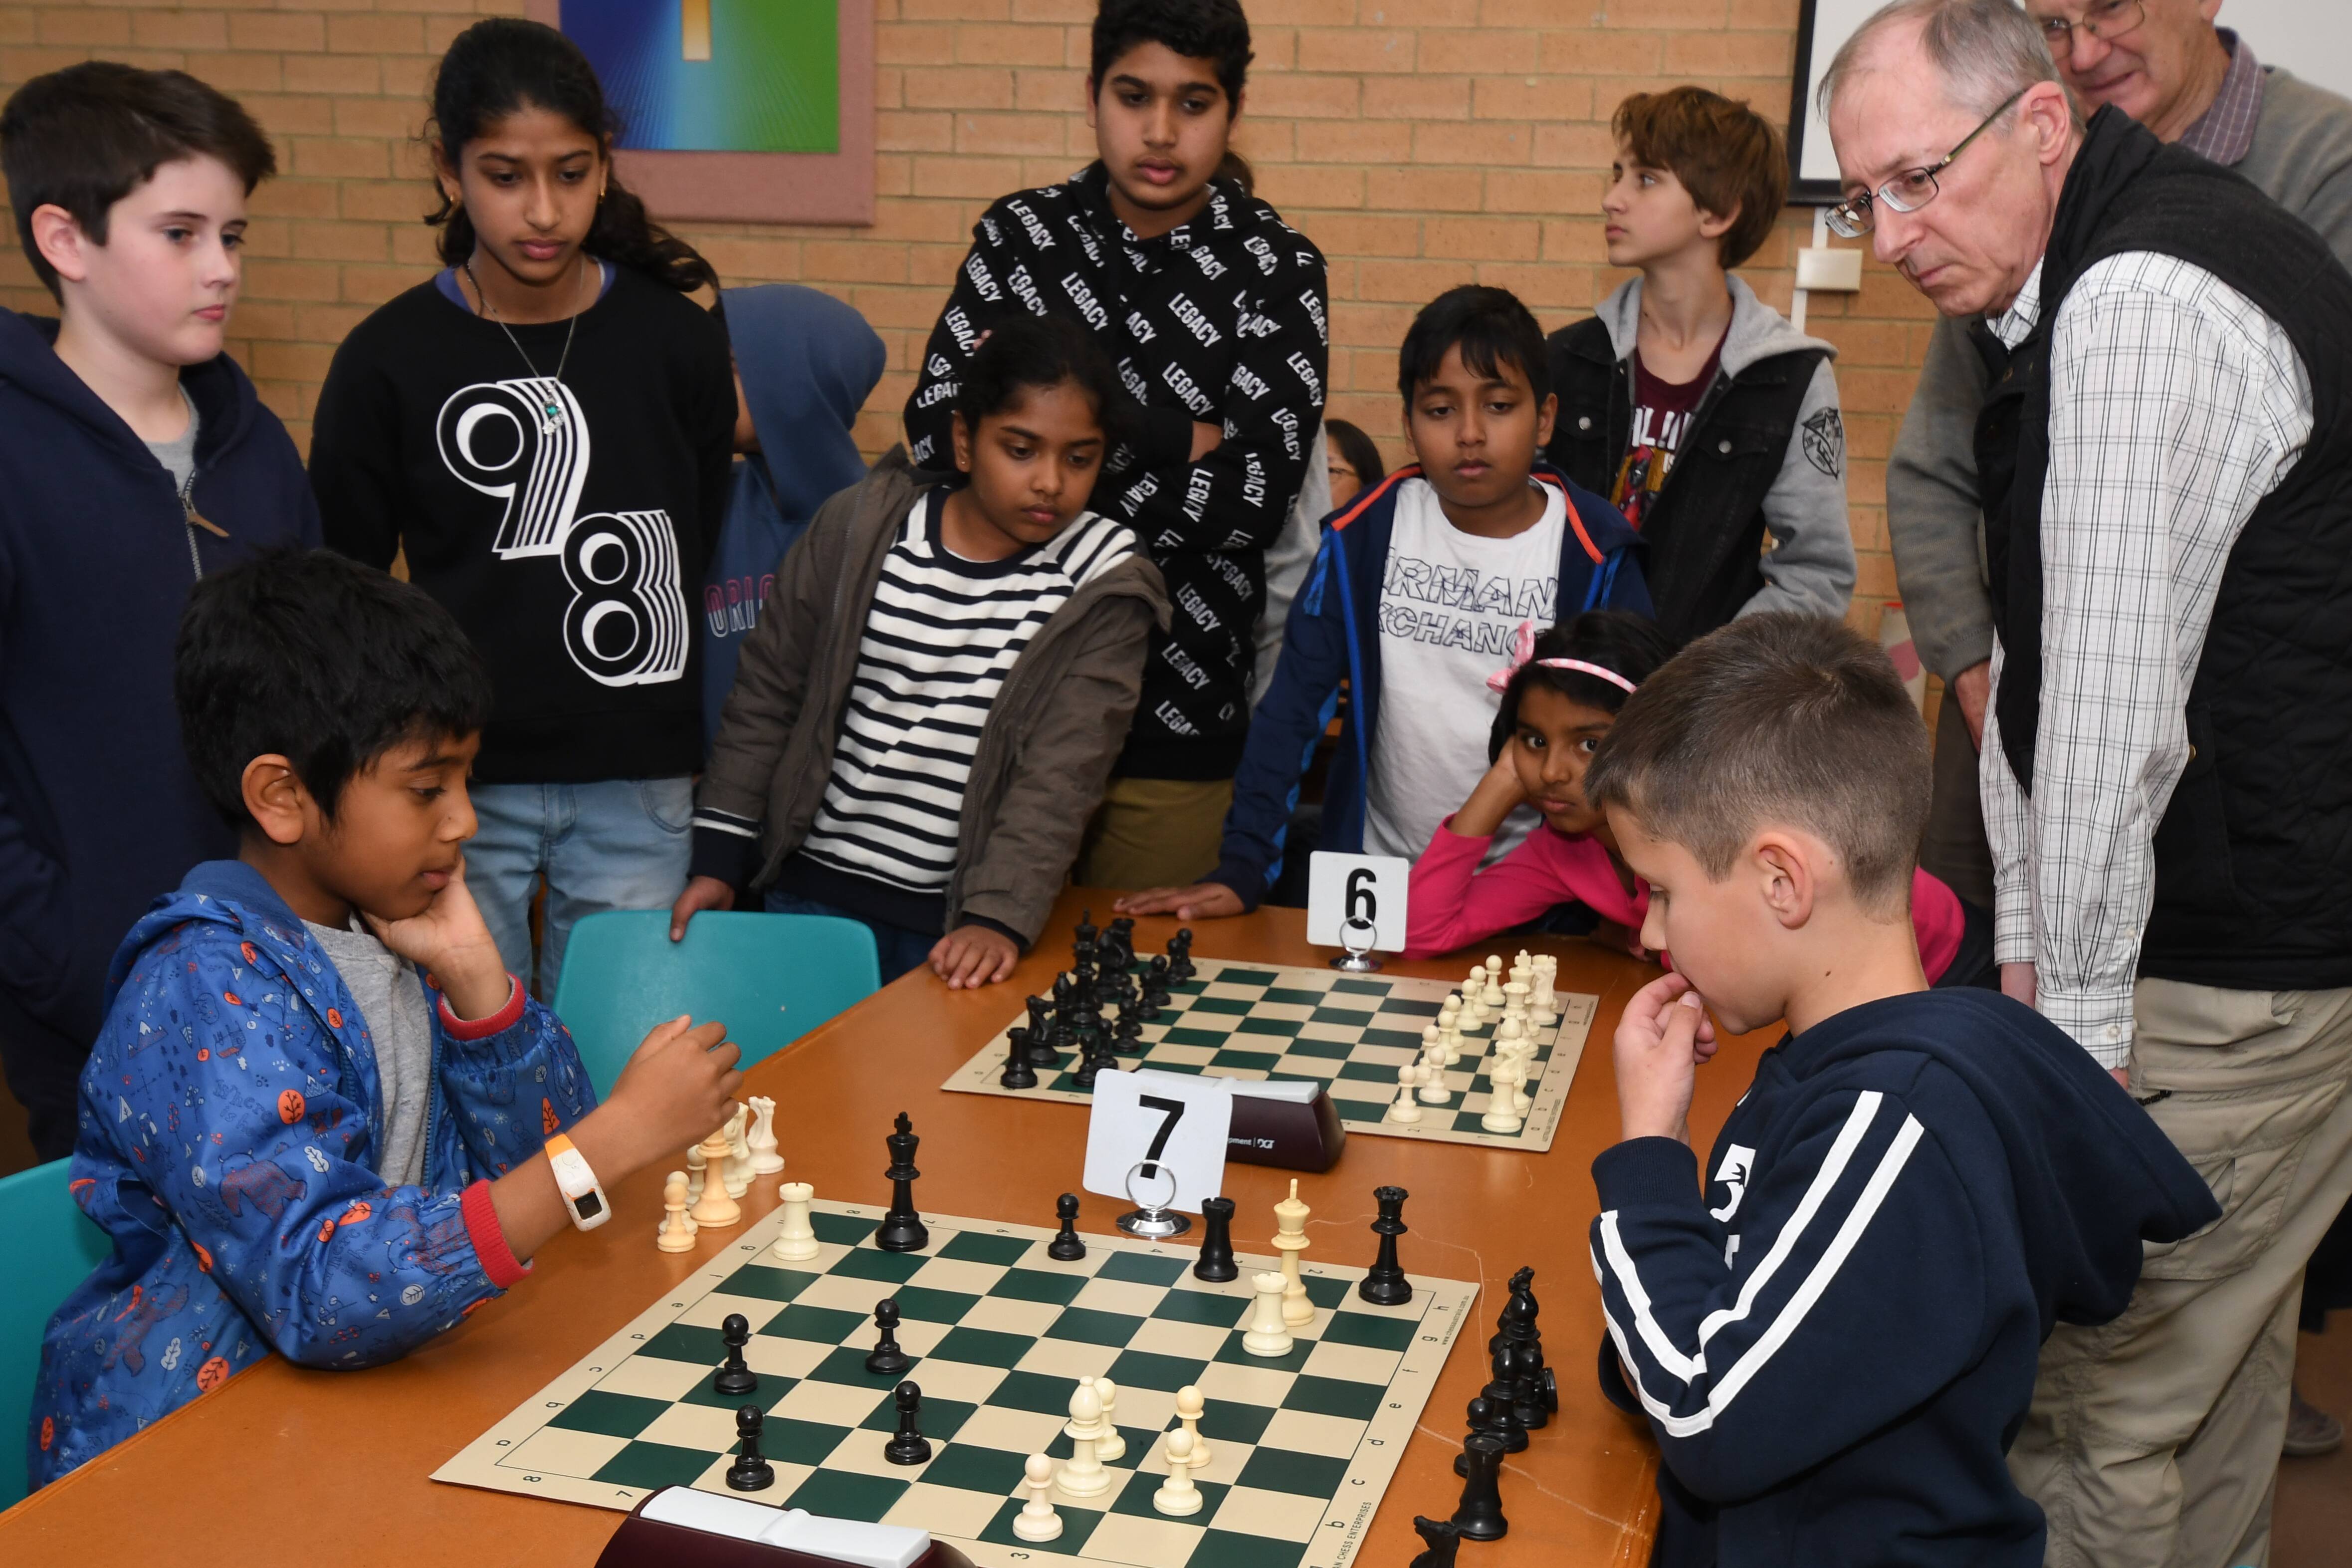 Woodall kids hone skills through chess, Local News